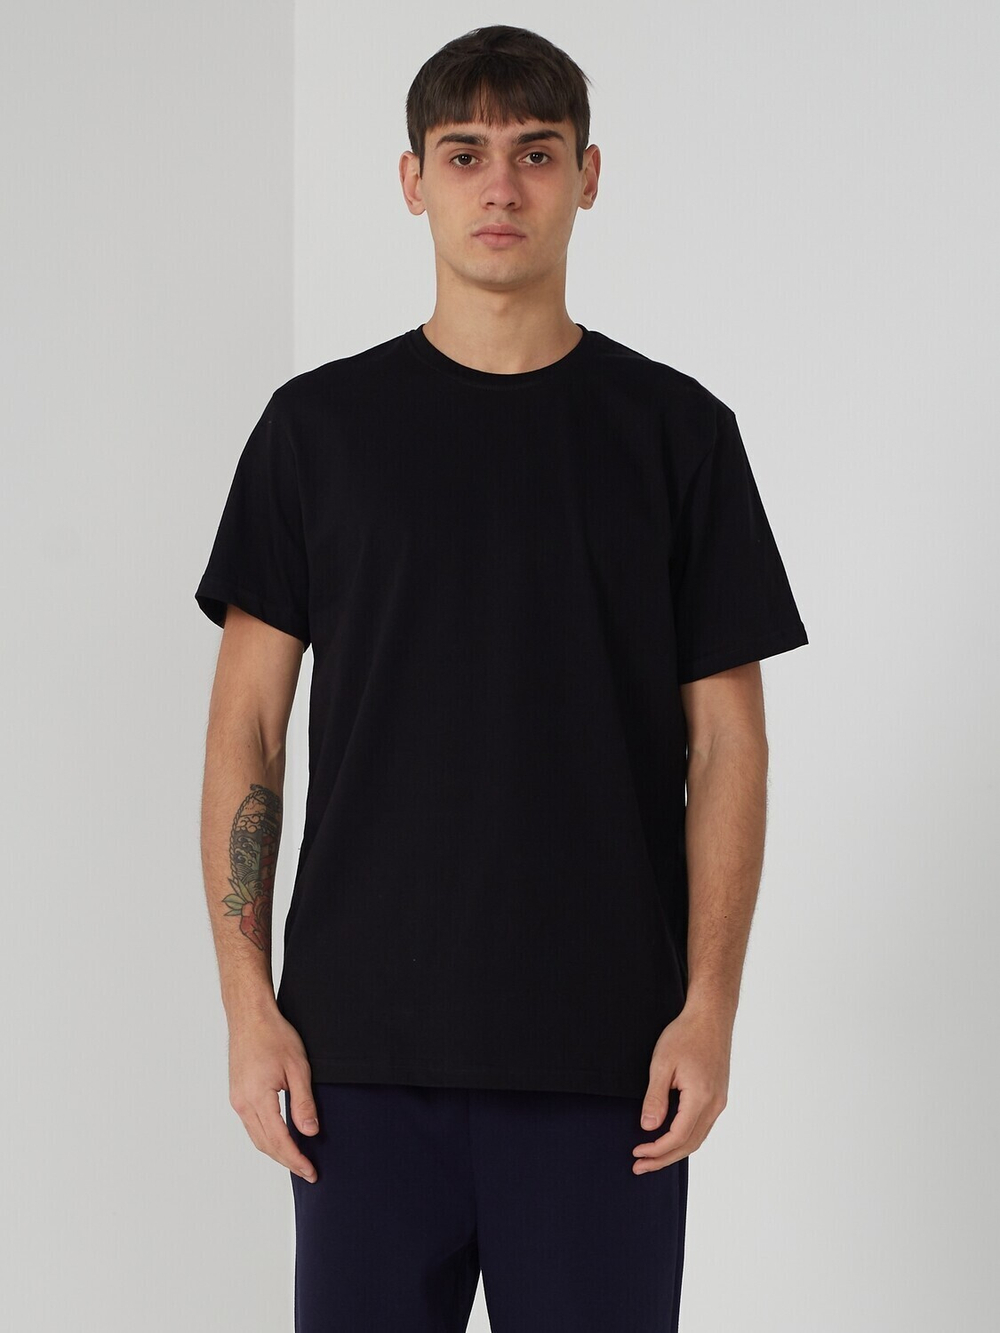 Сток футболка #178 стандарт (черный), 100% хлопок, плотность 190 г.